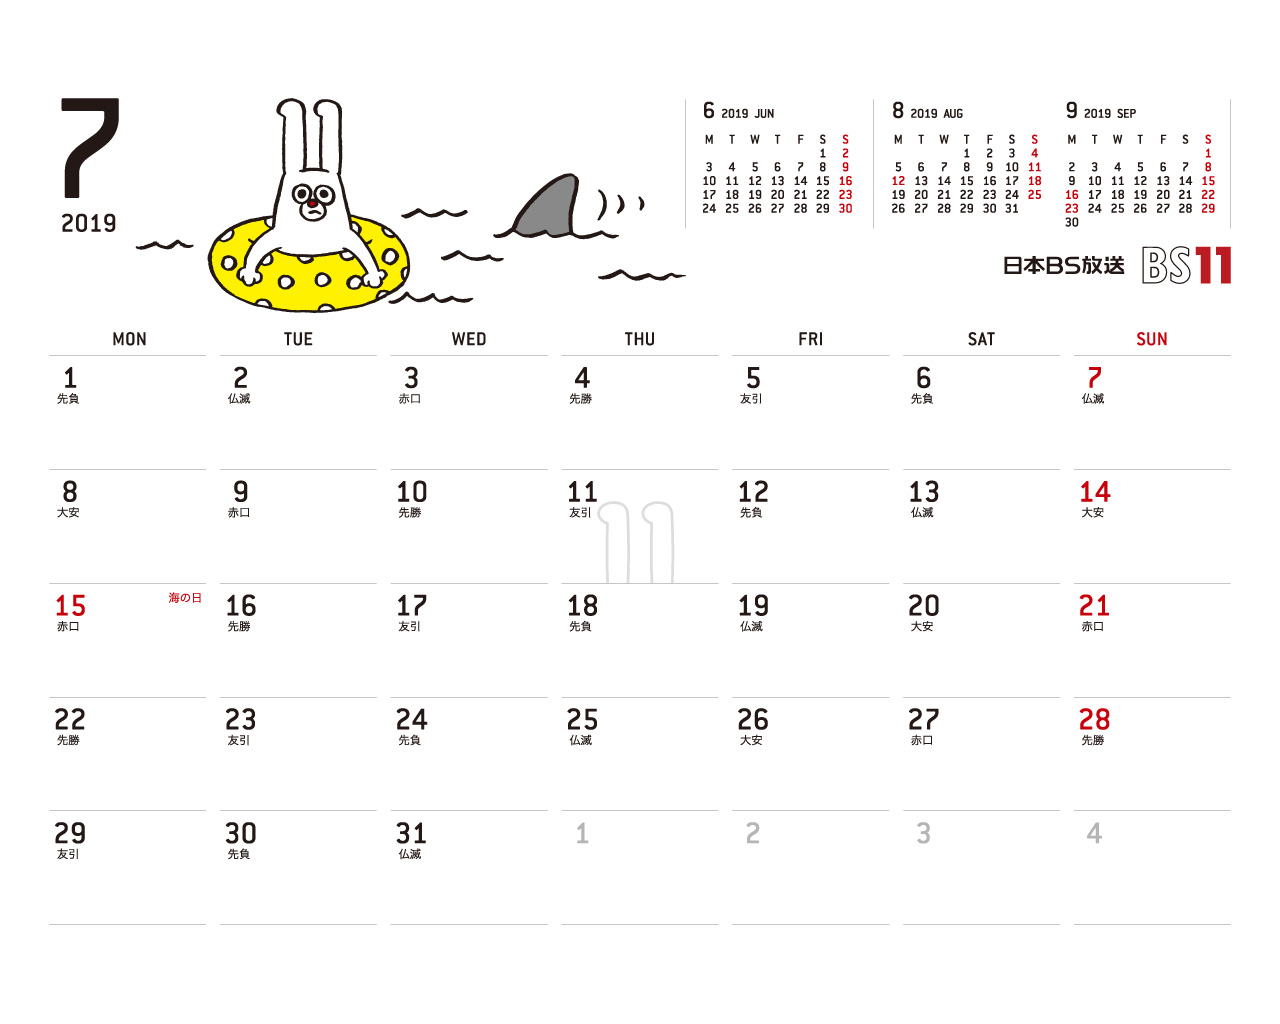 じゅういっちゃんのデジタルカレンダー2018年07月 Bs11 イレブン